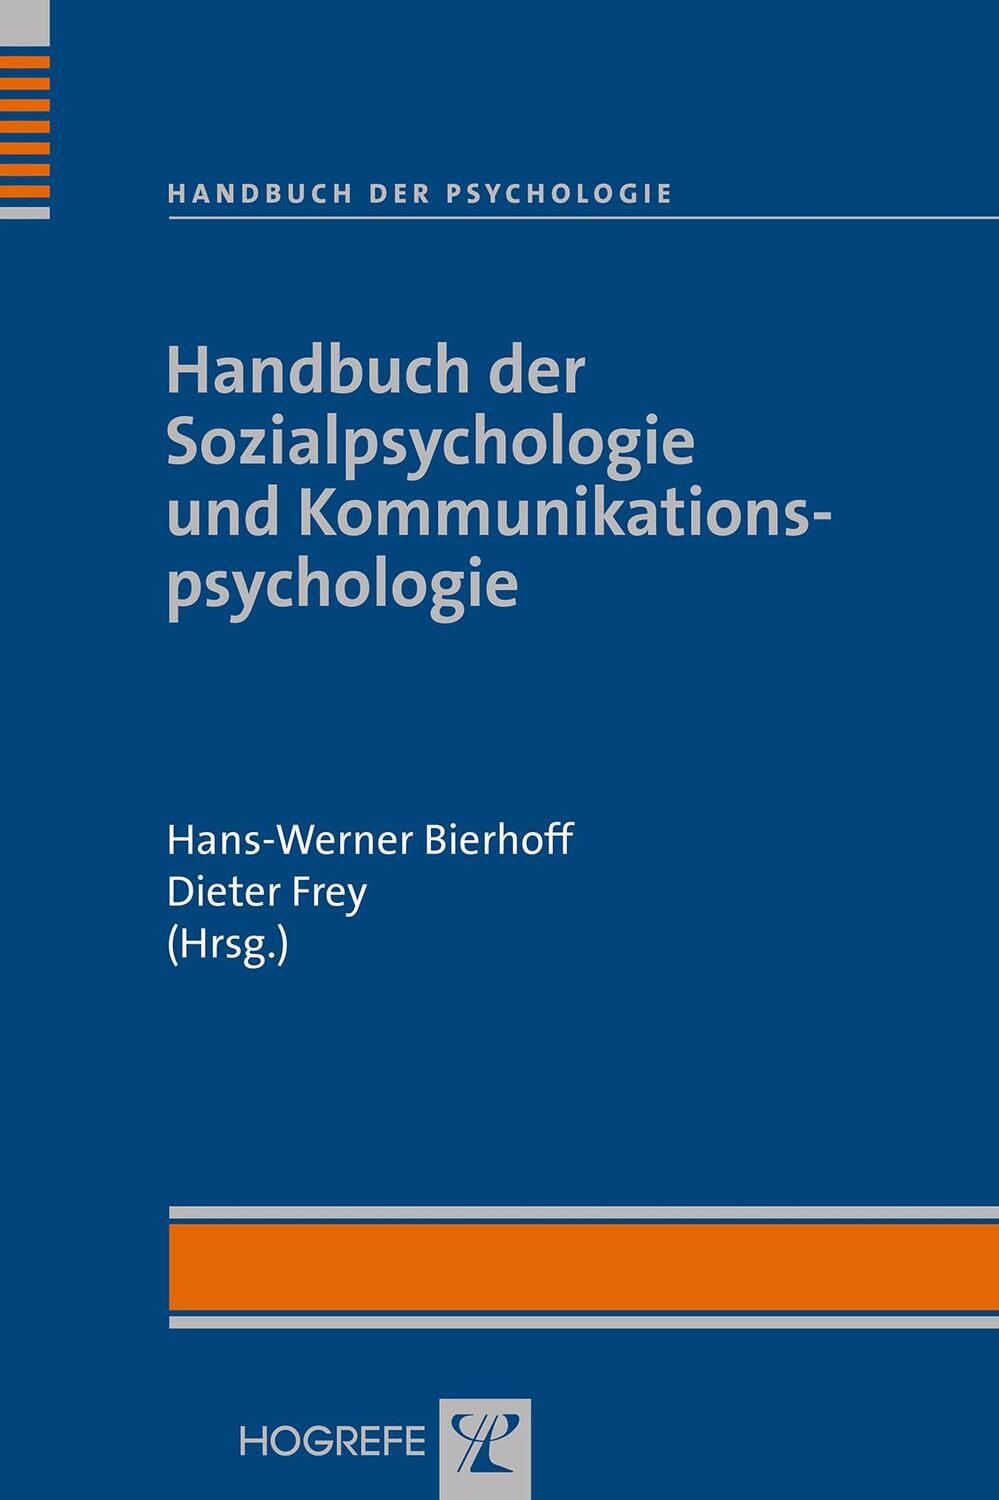 Handbuch der Sozialpsychologie und Kommunikationspsychologie - Bierhoff, Hans-Werner